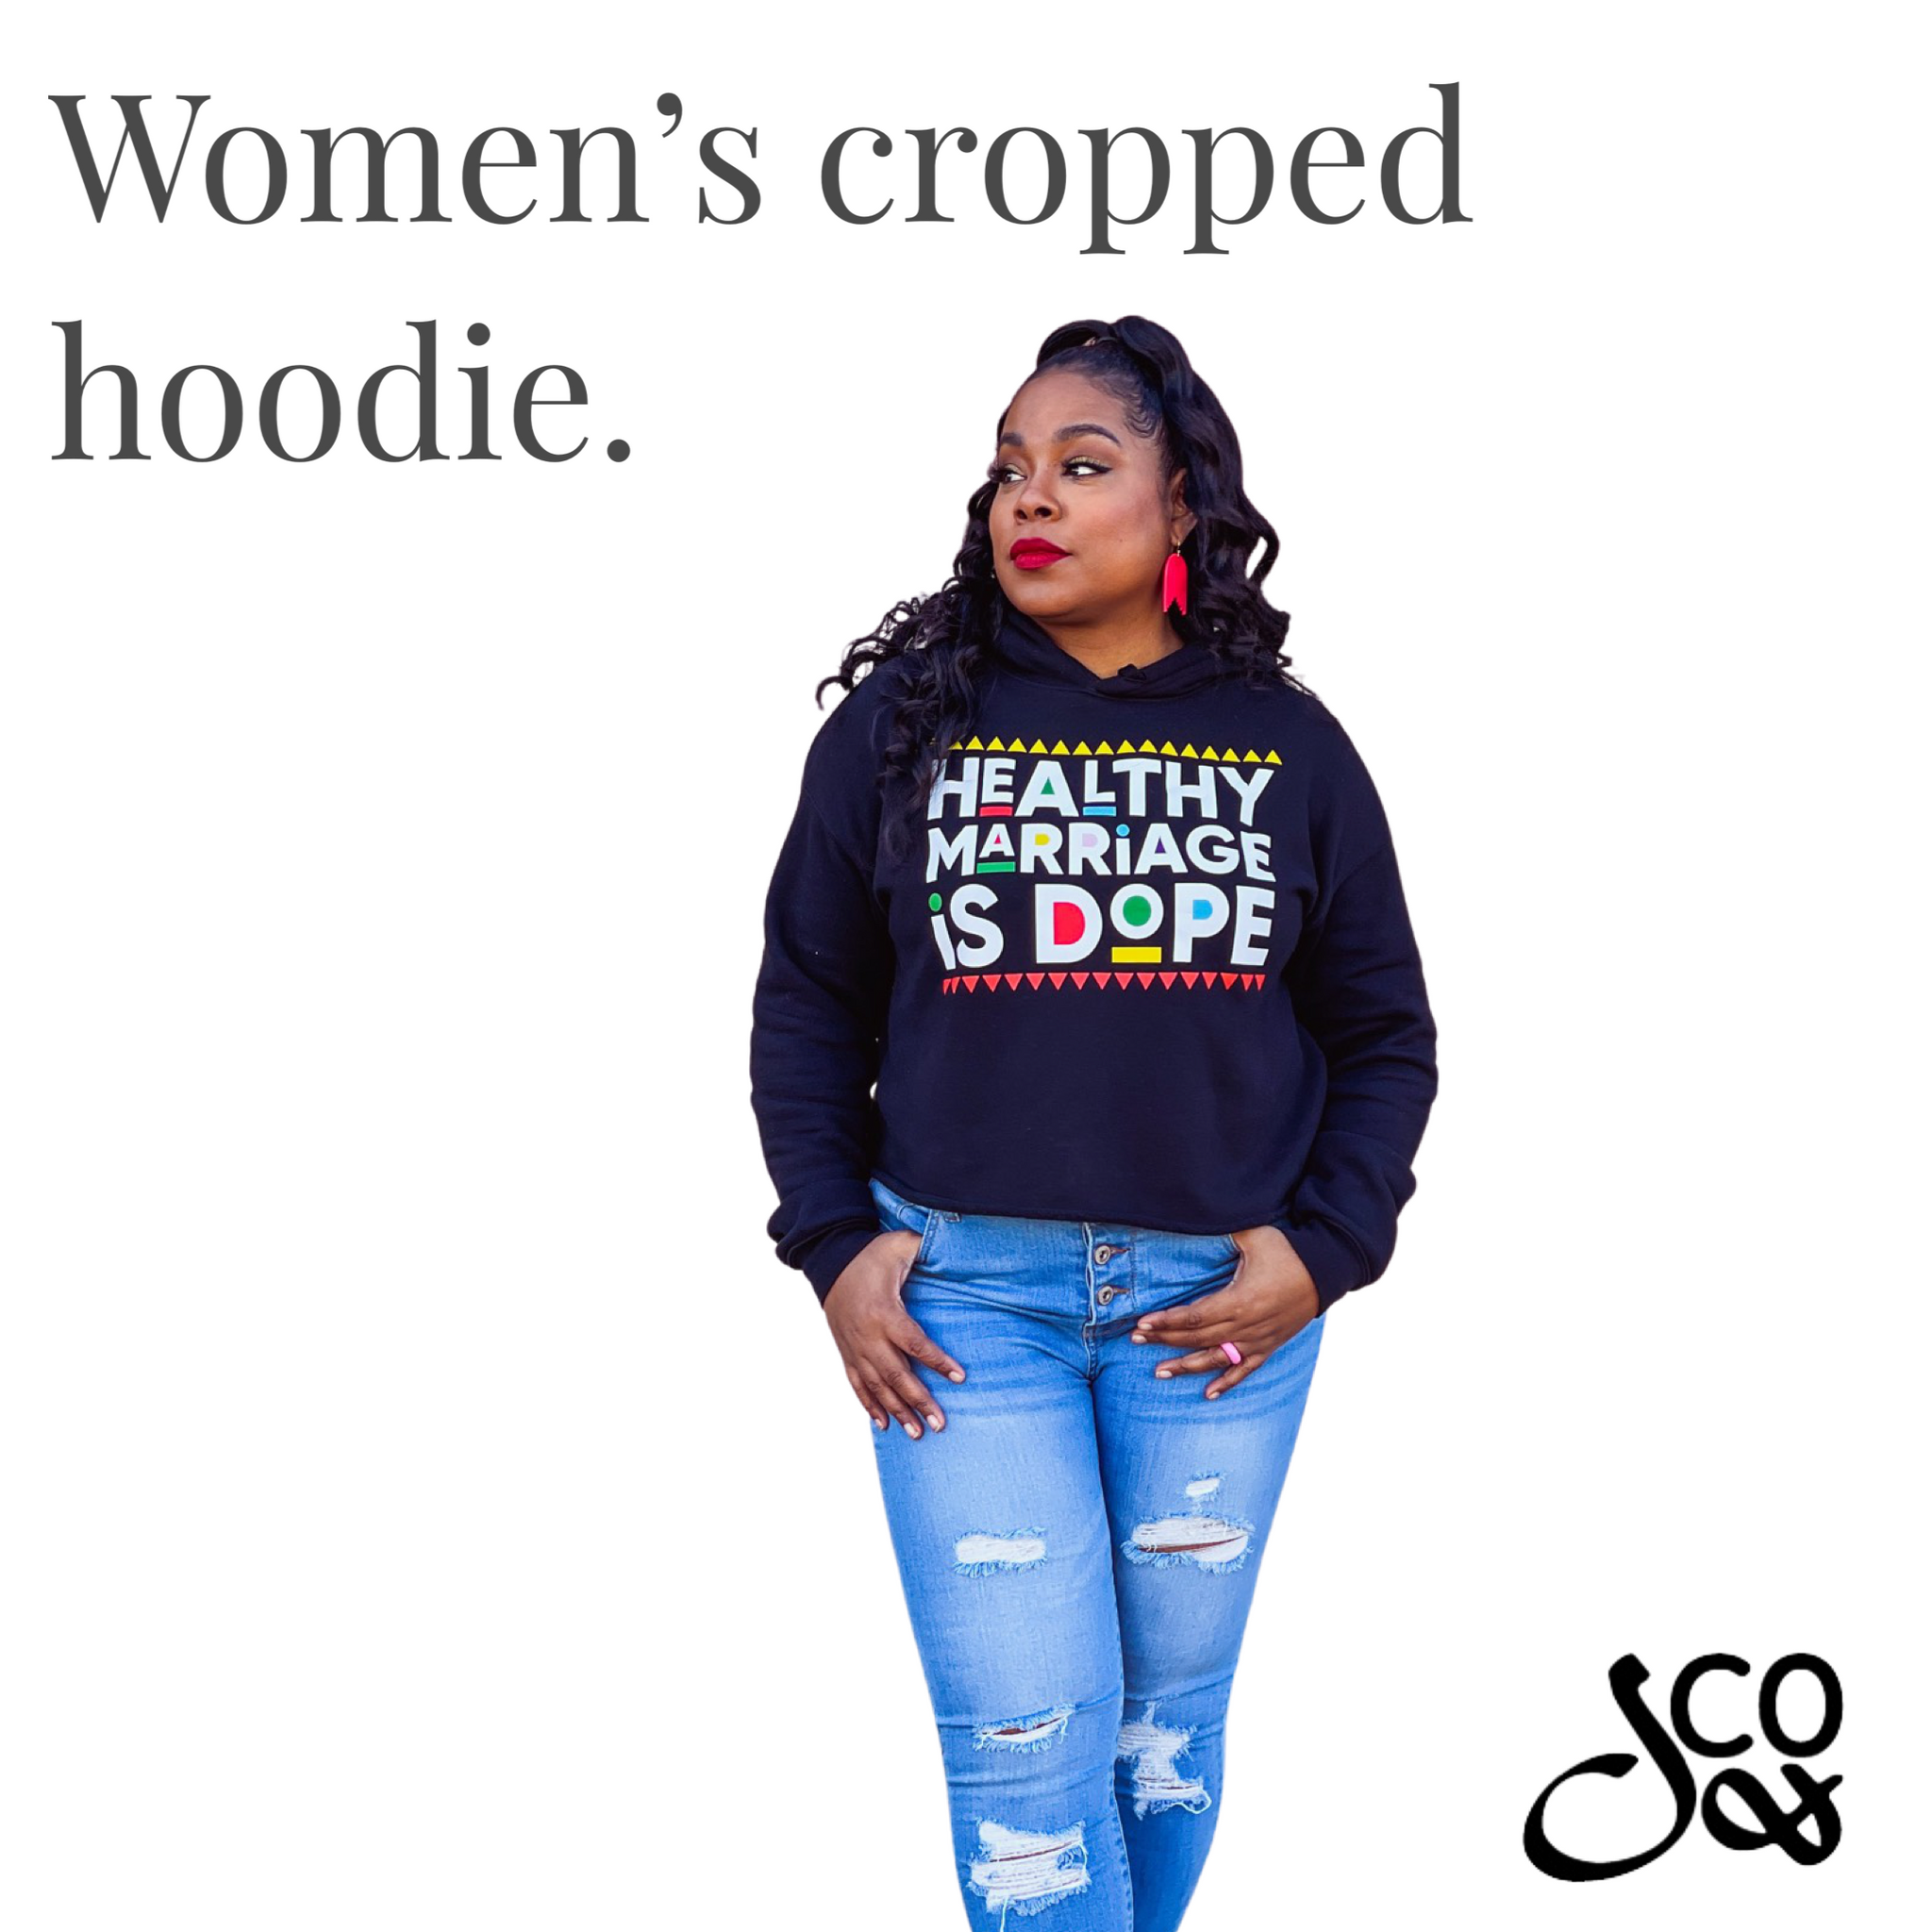 02 - HMID Women's Cropped Hoodie - BLK